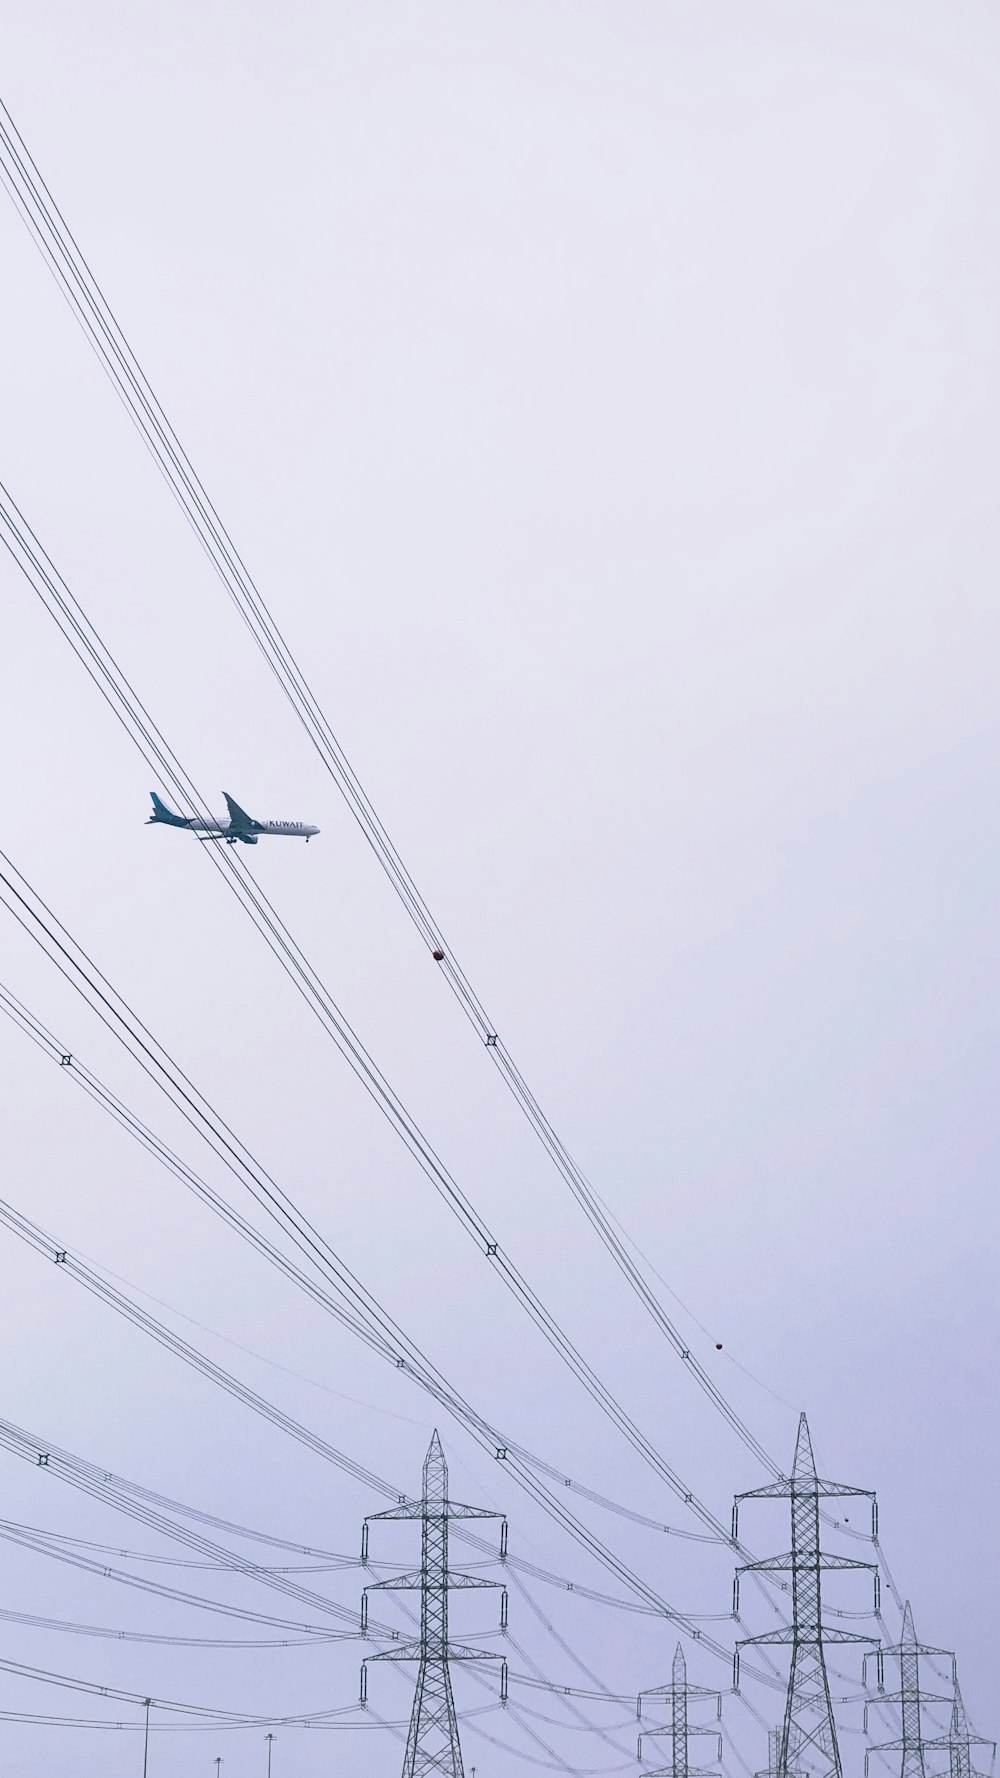 aeroplano sopra il palo di trasmissione dell'energia elettrica